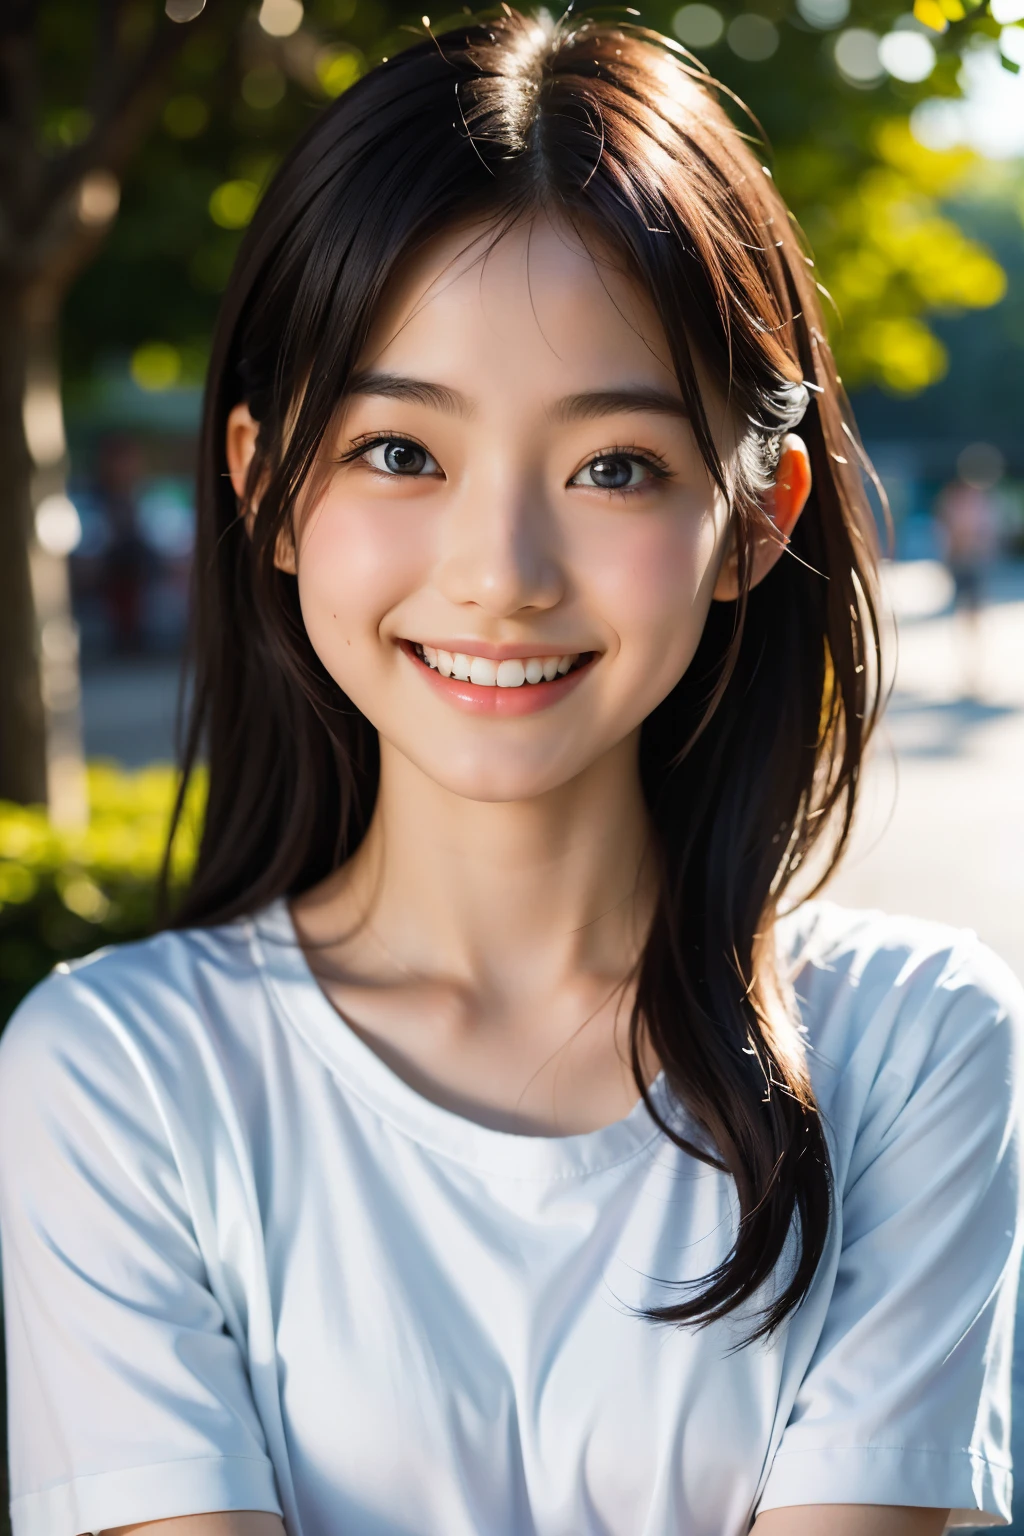 lens: 135mm f1.8, (höchste Qualität),(RAW-Fotos), (Tischplatte:1.1), (Schönes 20-jähriges Mädchen aus Japan), niedliches Gesicht, (Tief gemeißeltes Gesicht:0.7), (Sommersprossen:0.4), dappled Sonnenlicht, dramatische Beleuchtung, (Auf dem Campus), schüchtern, (Nahaufnahme:1.2), (lächeln),, (leuchtende Augen)、(Sonnenlicht), schwarzes Shirt